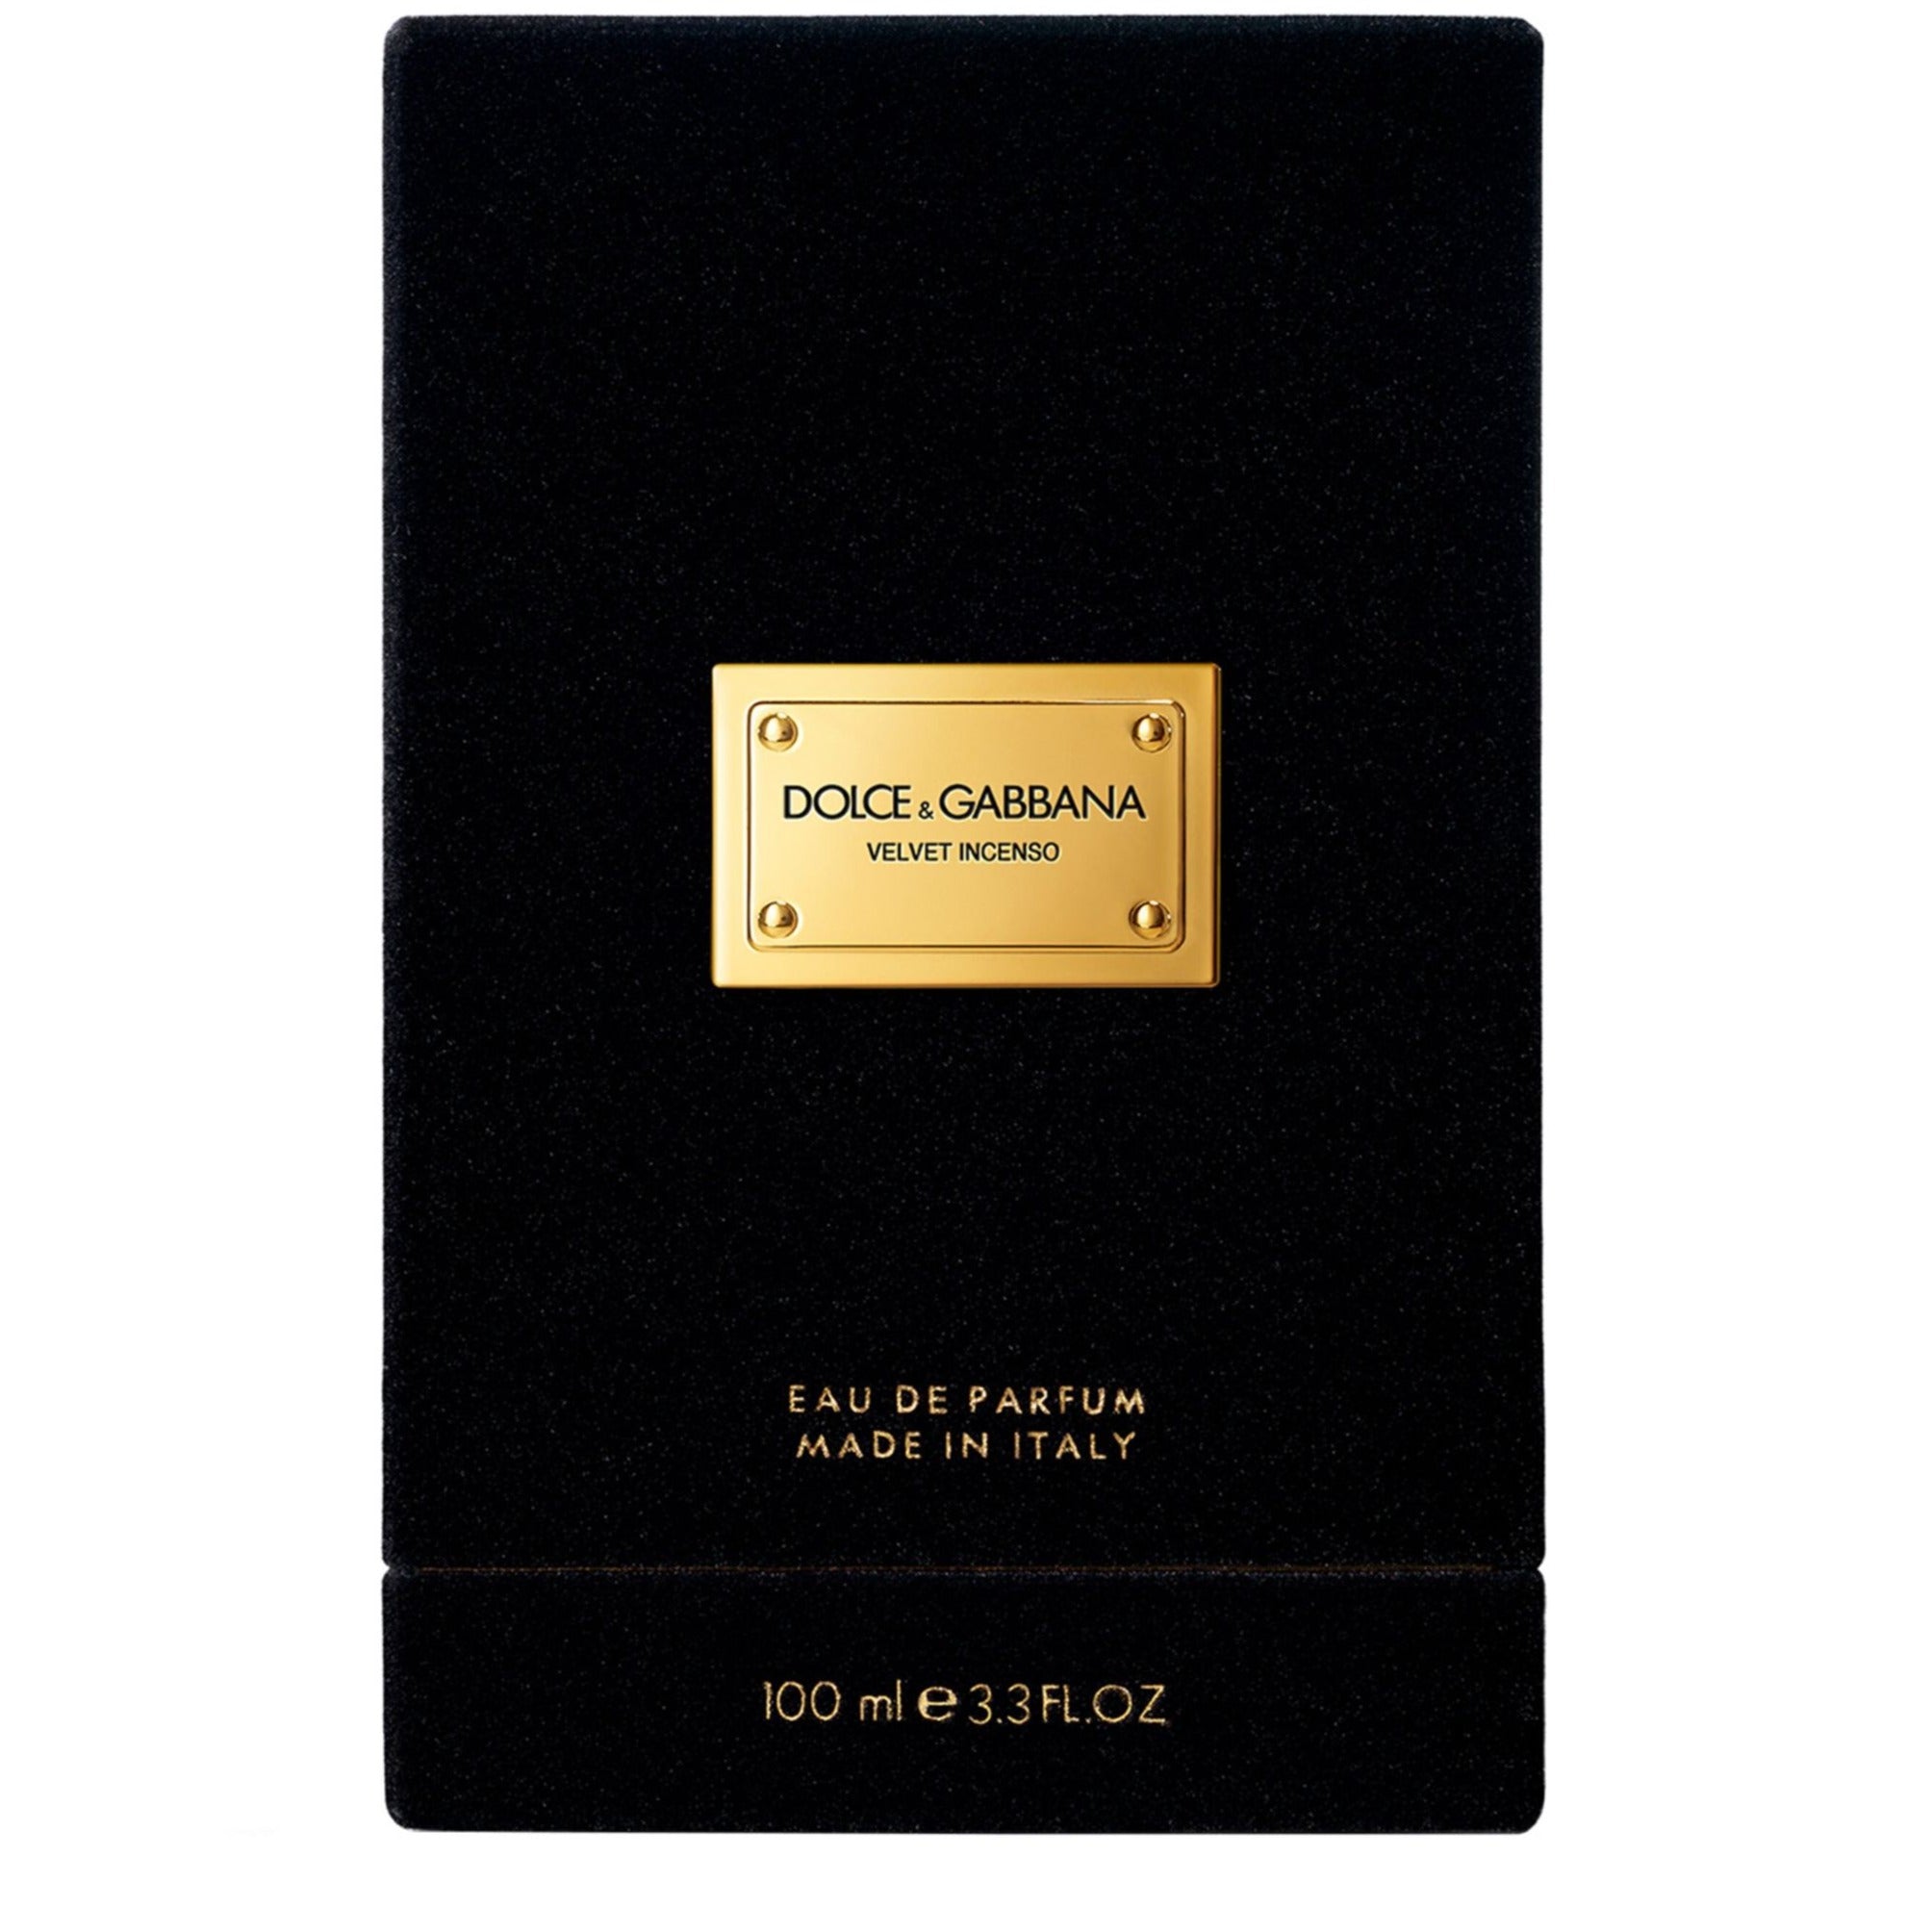 Dolce & Gabbana Velvet Incenso EDP For Men | My Perfume Shop Australia